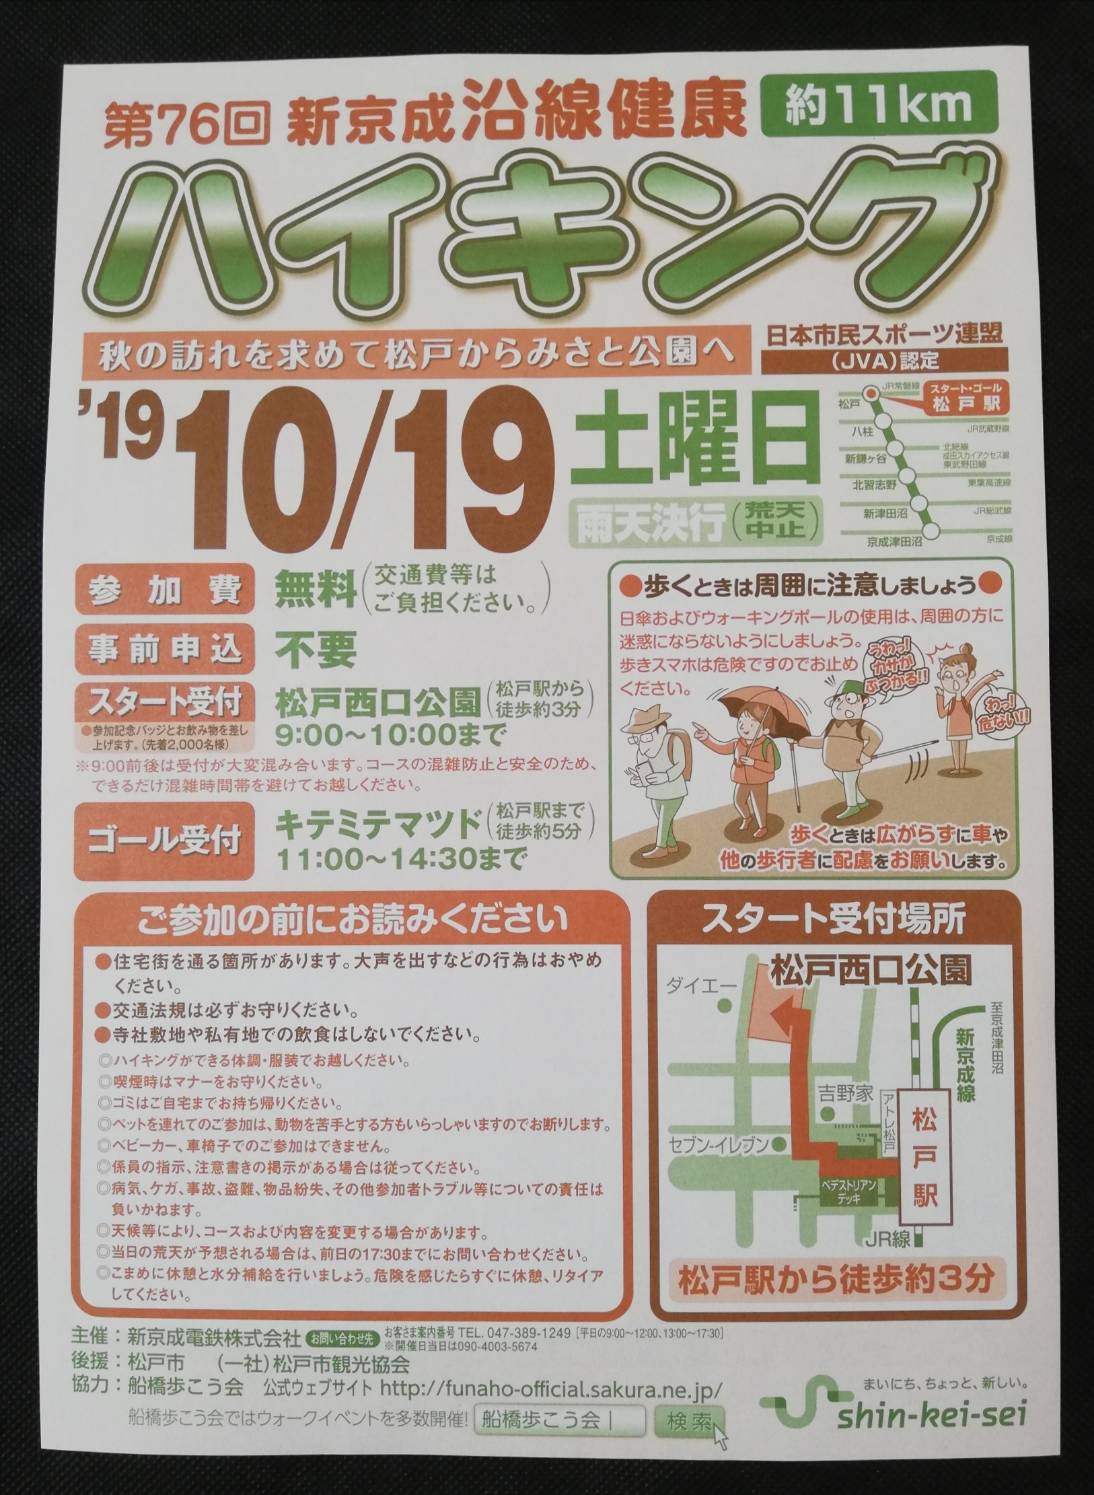 新京成ハイキング19第76回は10月19日予定 開催概要 秋のみさと公園コース 松戸ロード 松戸の地域情報